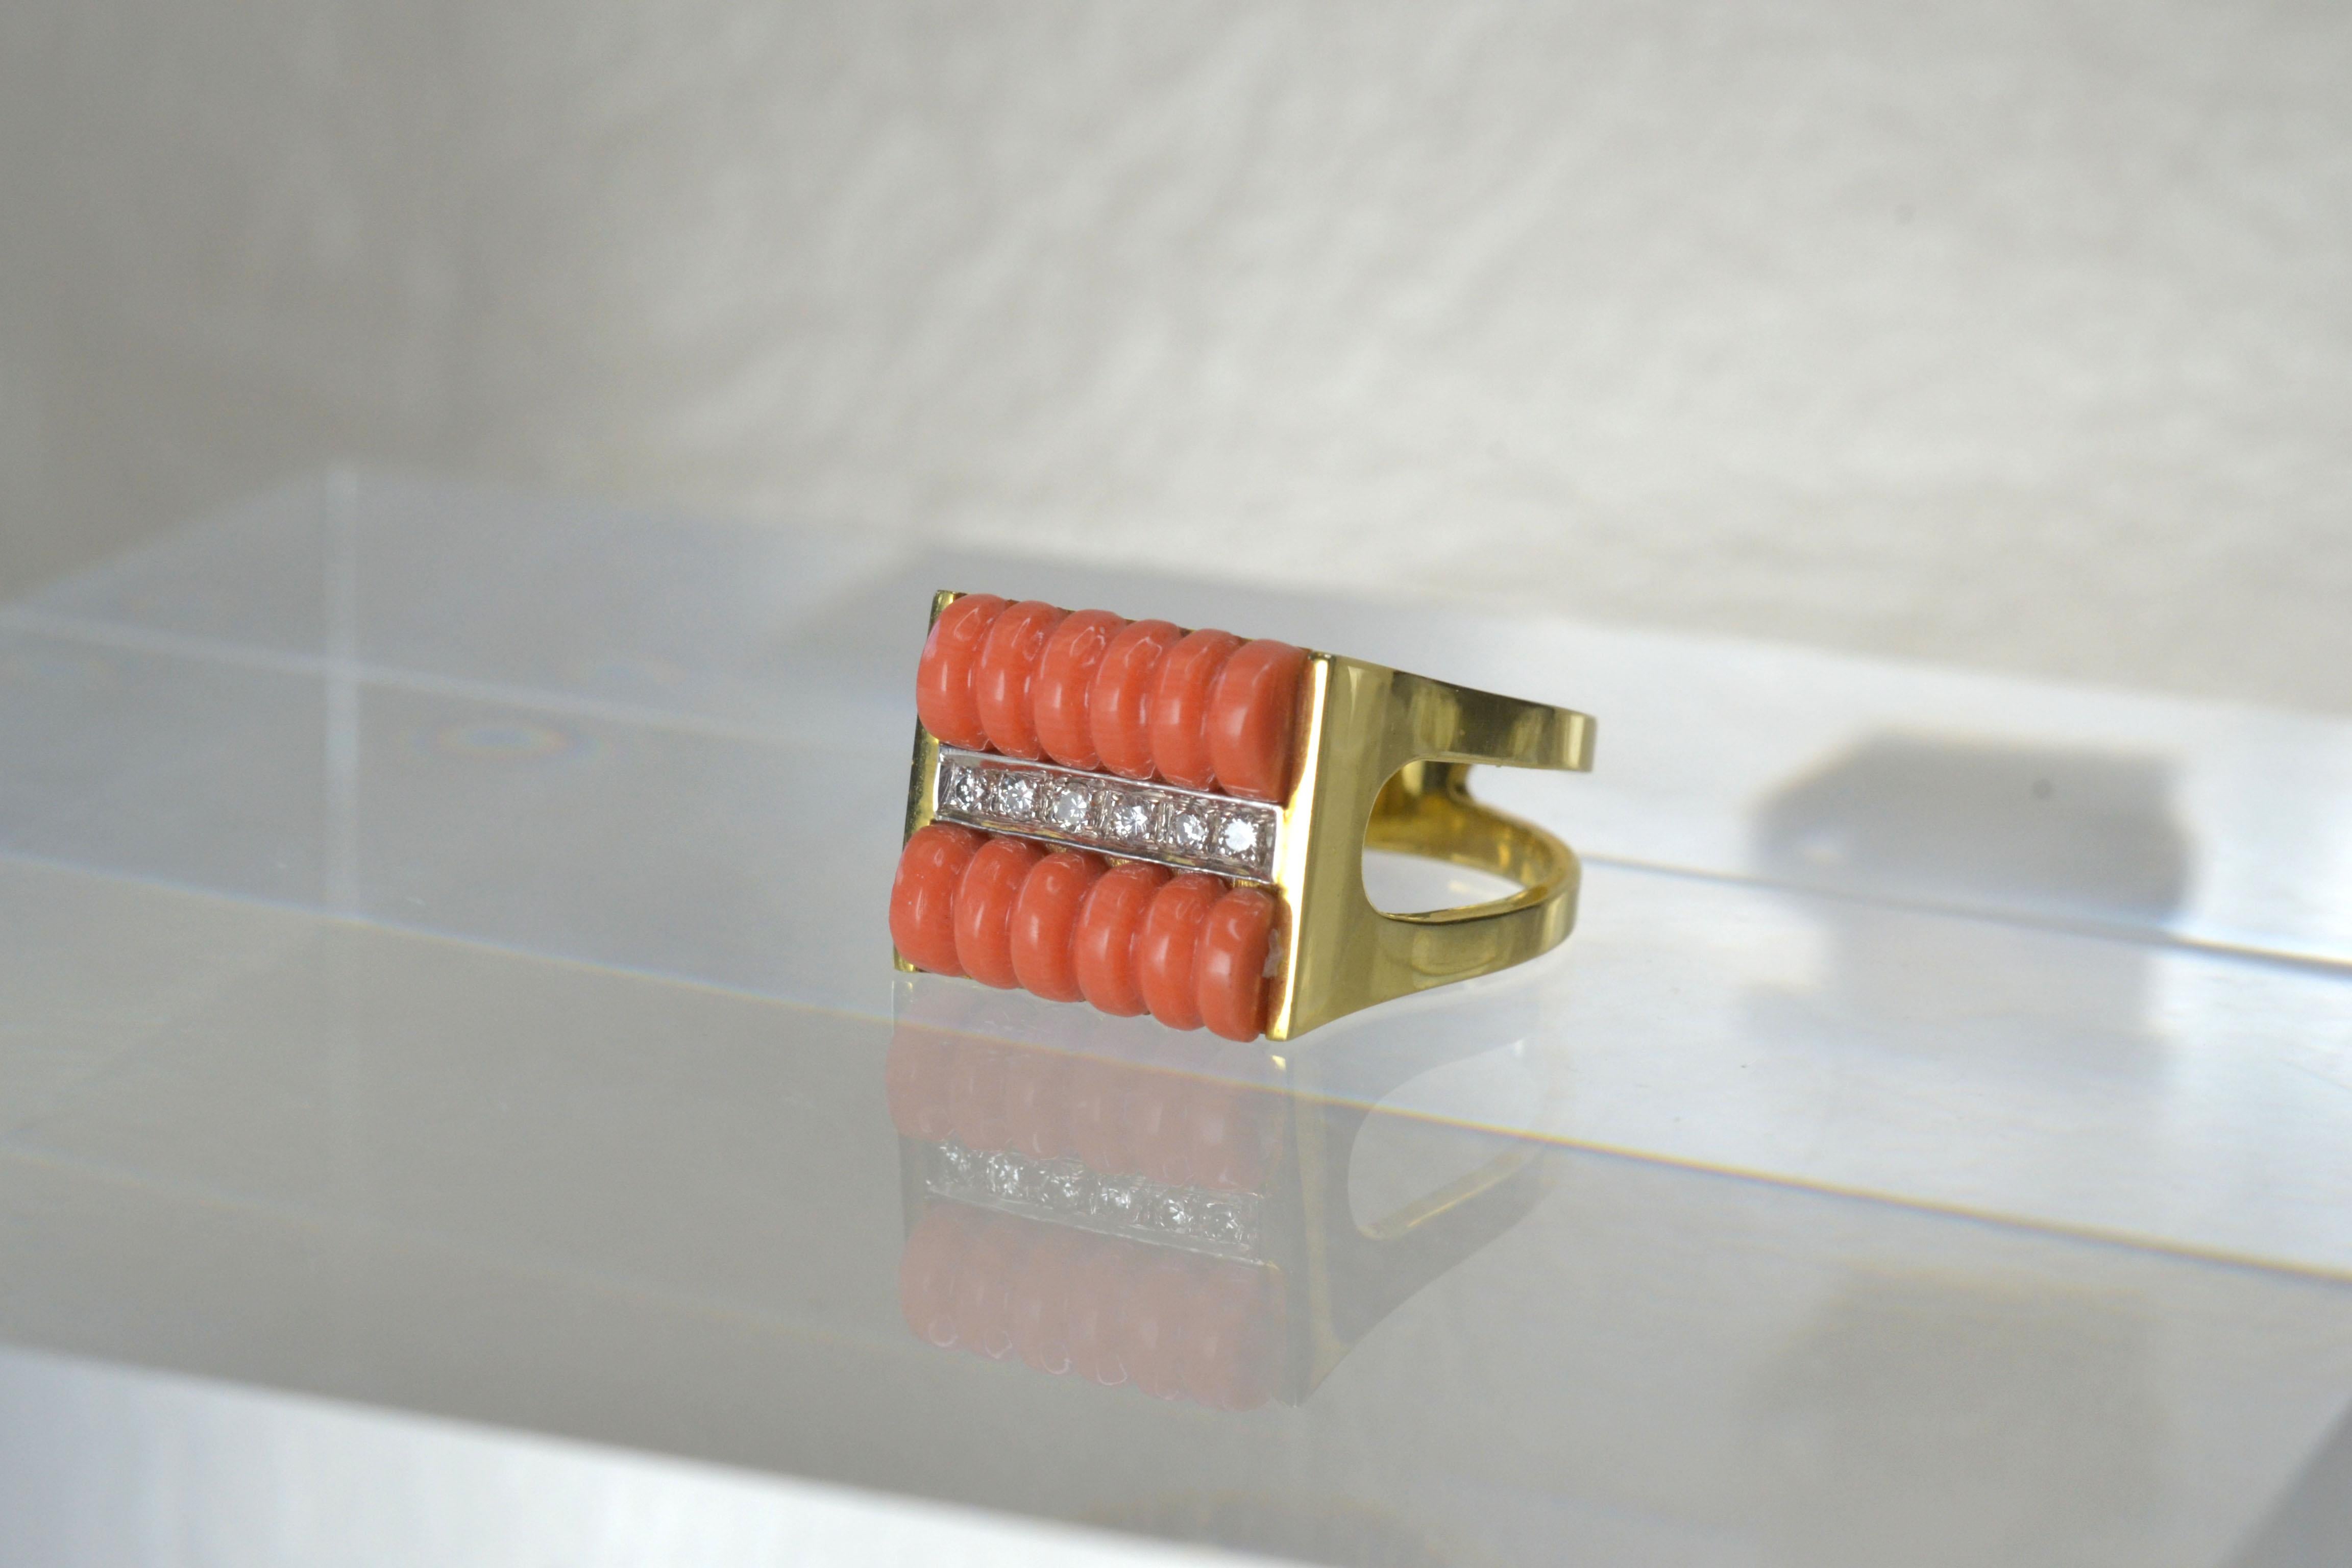 Vintage 14k Gold Koralle & Weißer Diamant Ring One-of-a-kind

Dieser 14-karätige Goldring aus den 1980er Jahren ist ein wunderbares Schmuckstück. Die Koralle und die diamantenen Akzente sind schillernd und dieser Ring passt perfekt in die Größe M